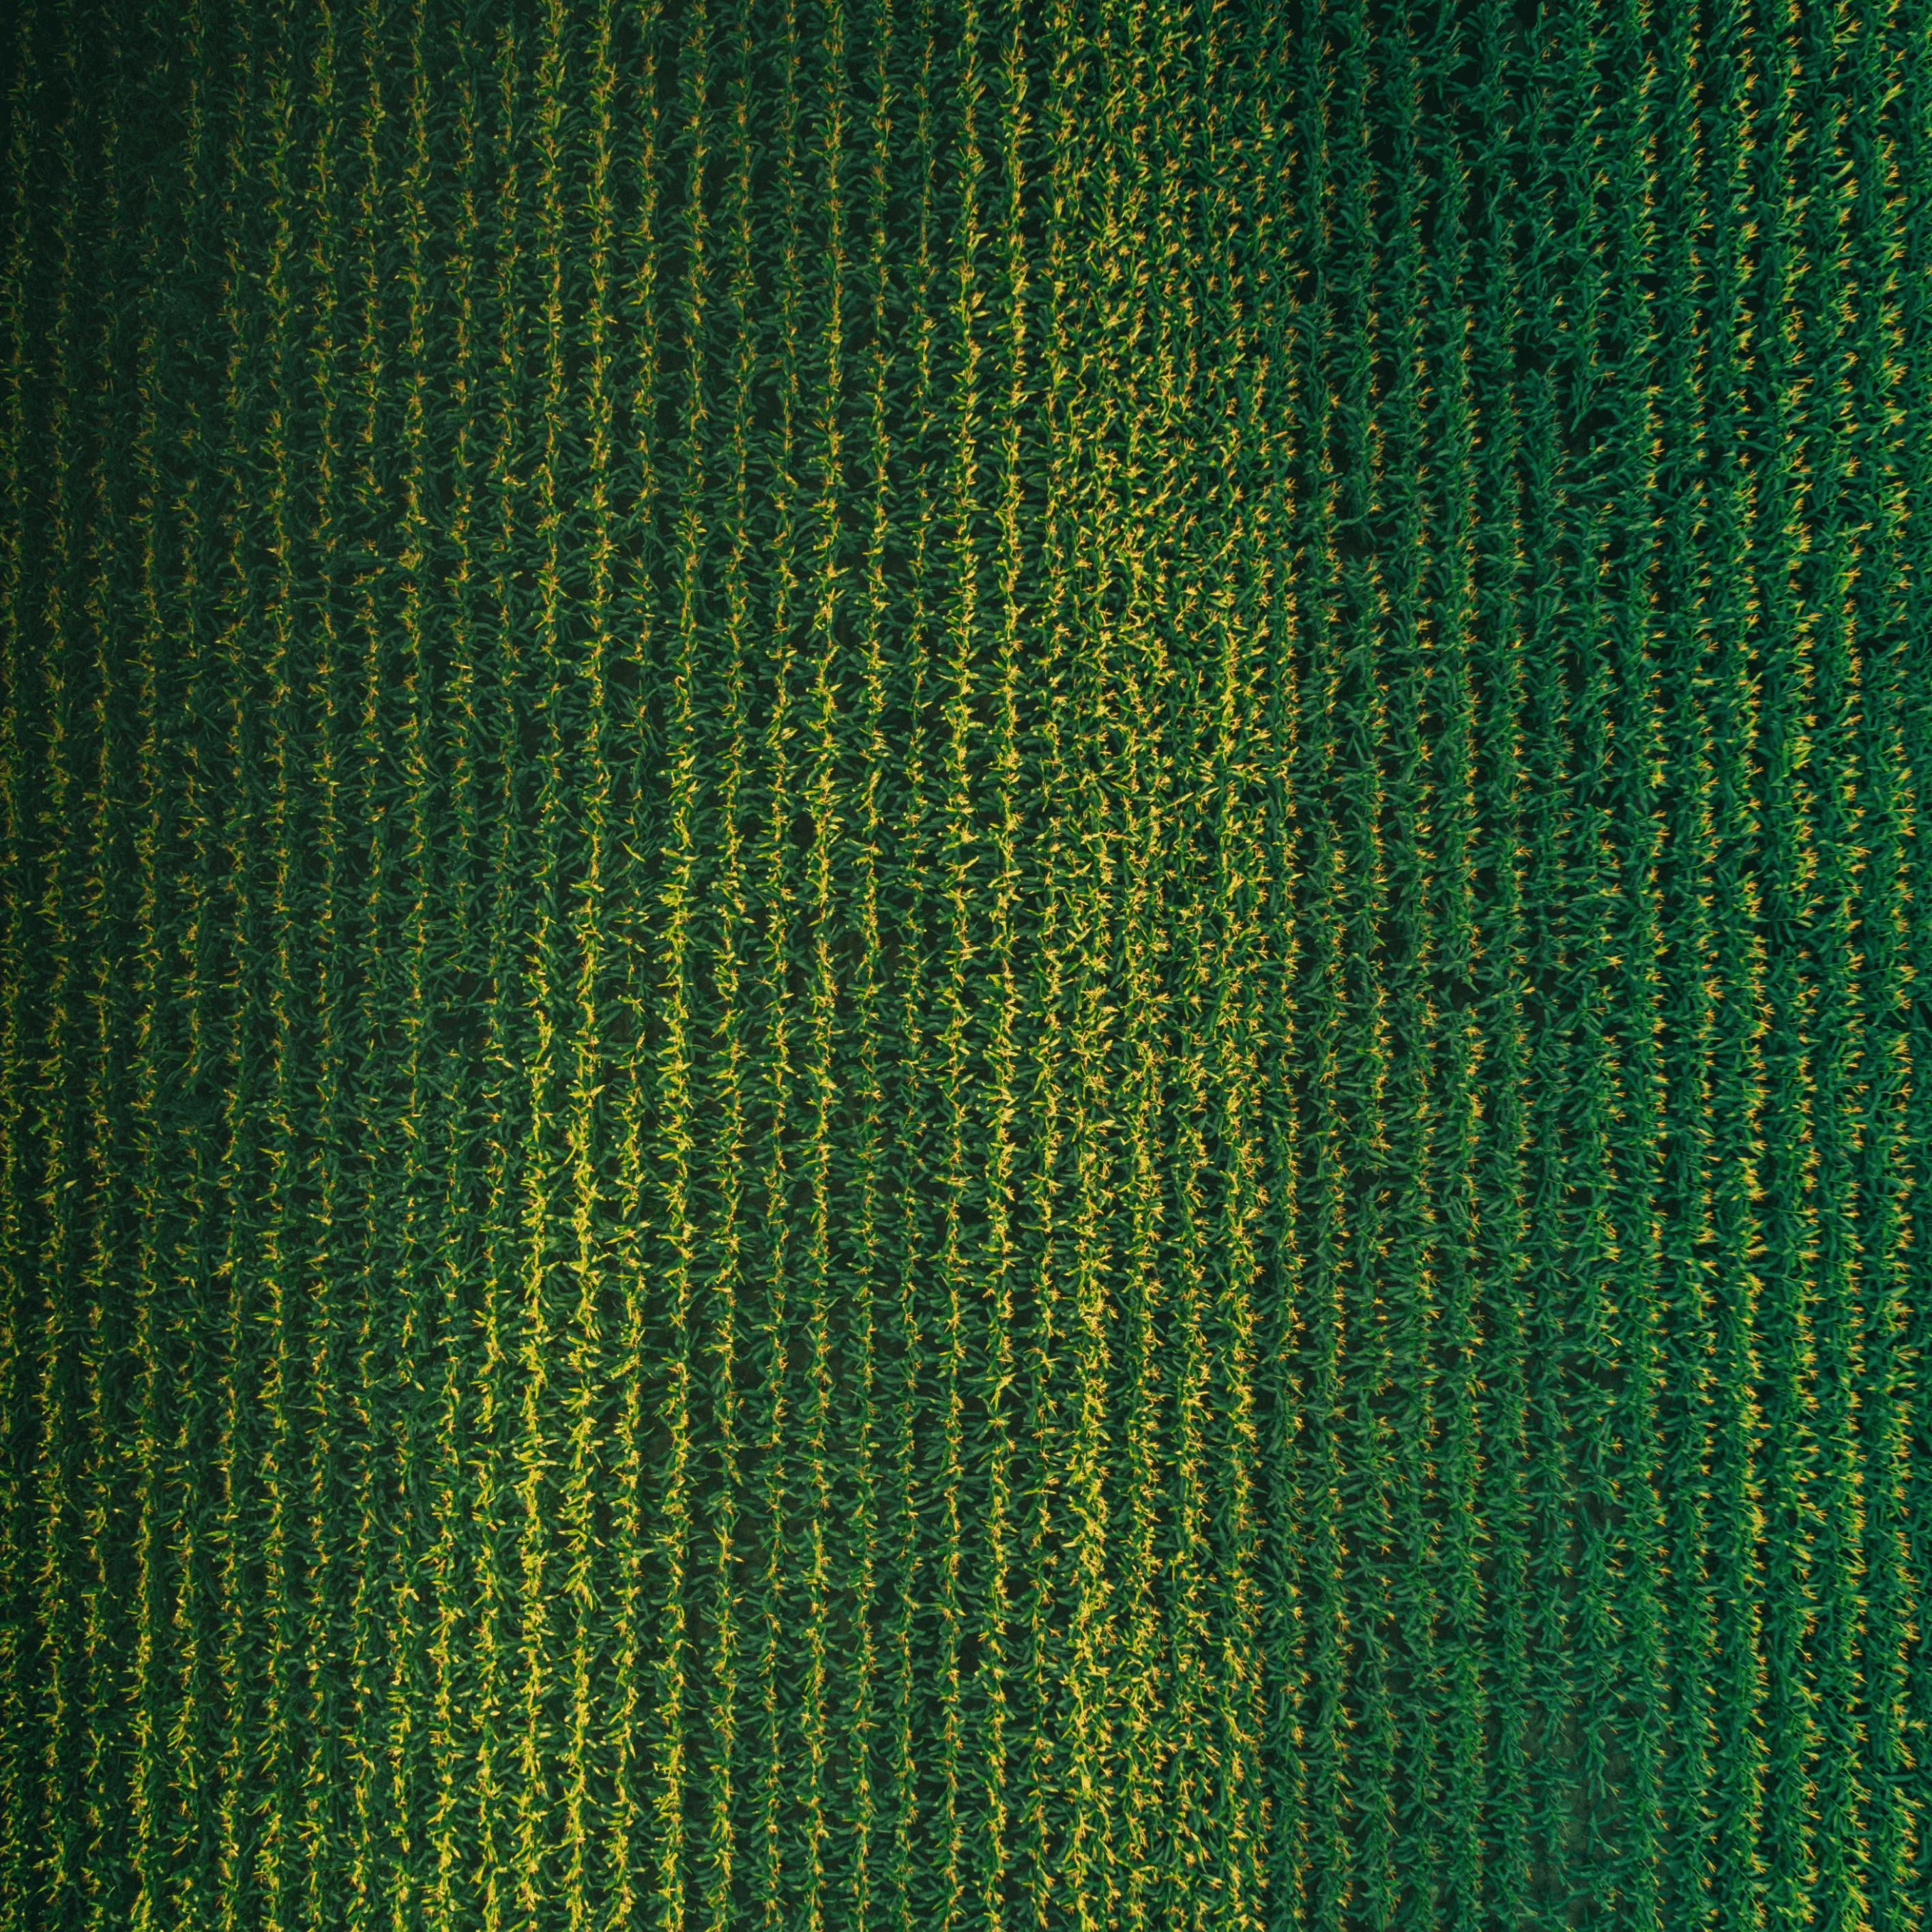 An overhead shot of a corn field